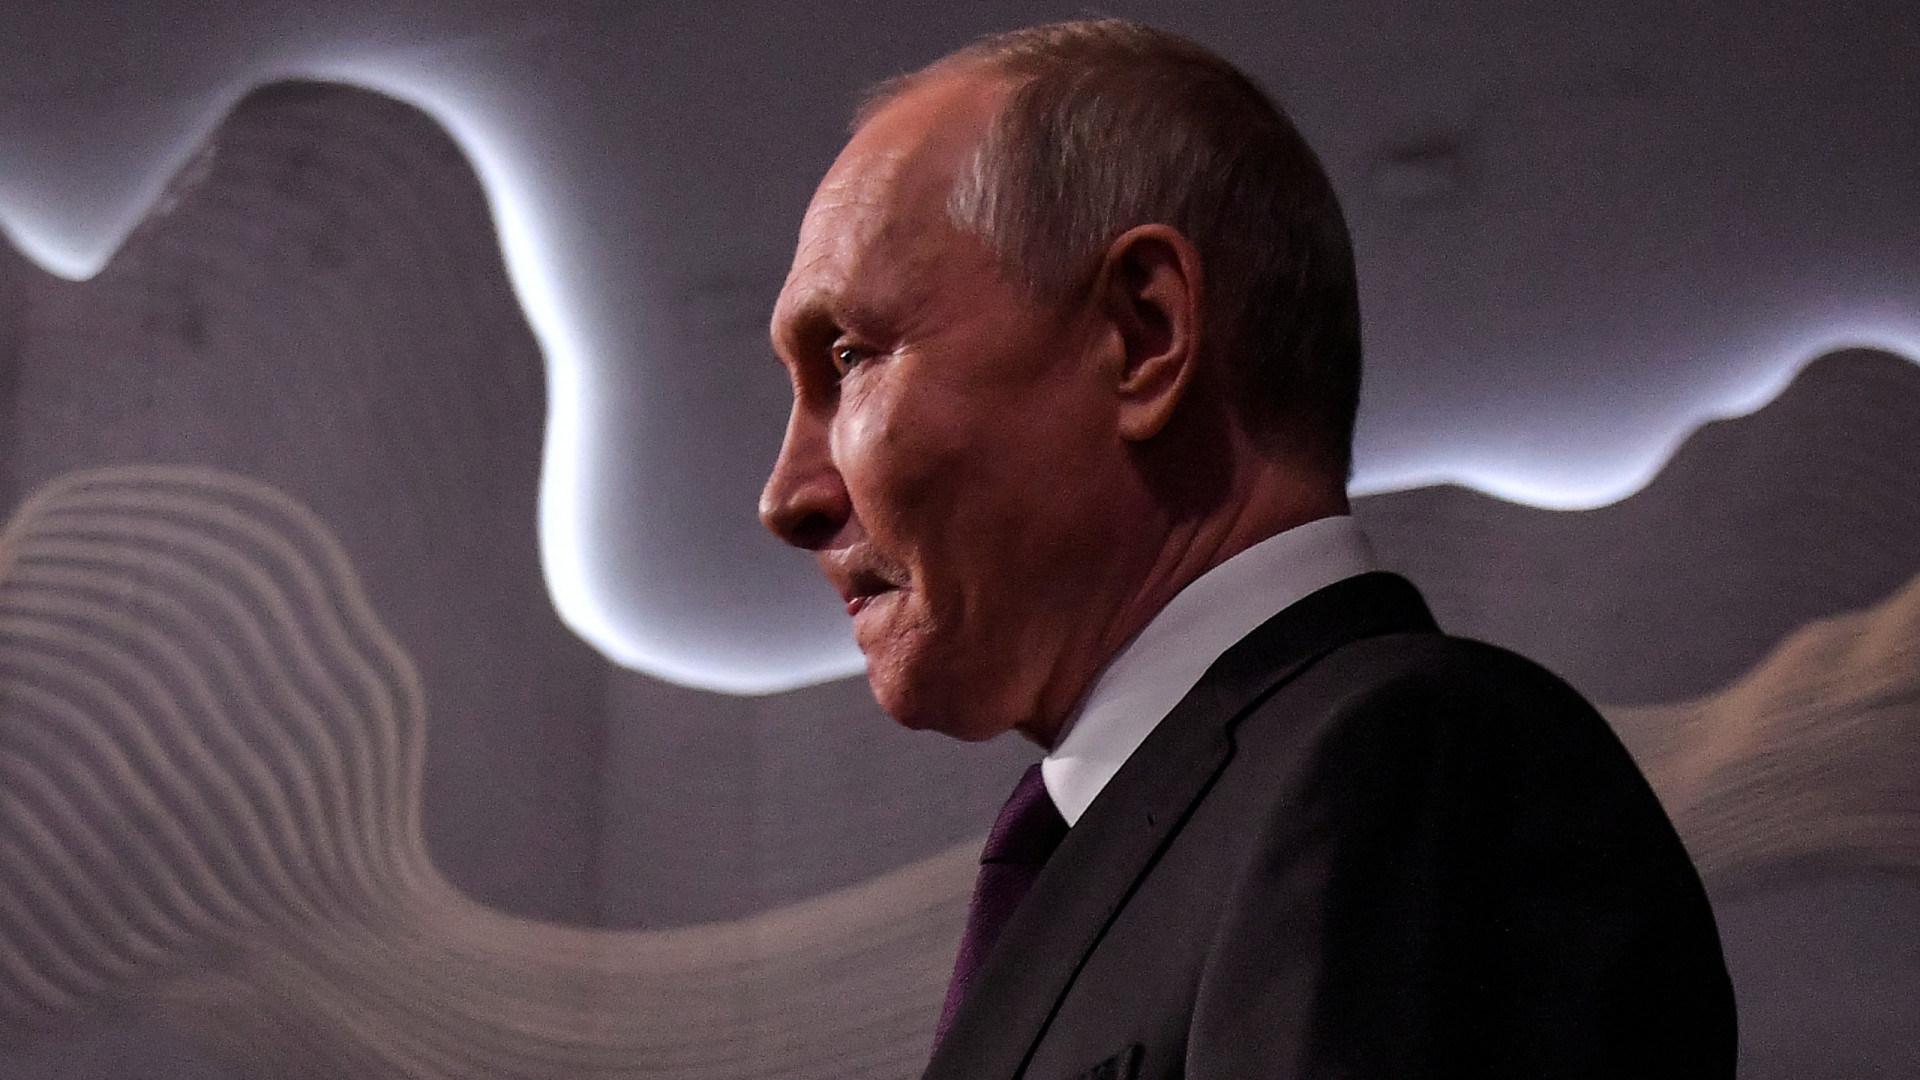 Putin enfrenta acusações de crimes de guerra desde o ano de 2000